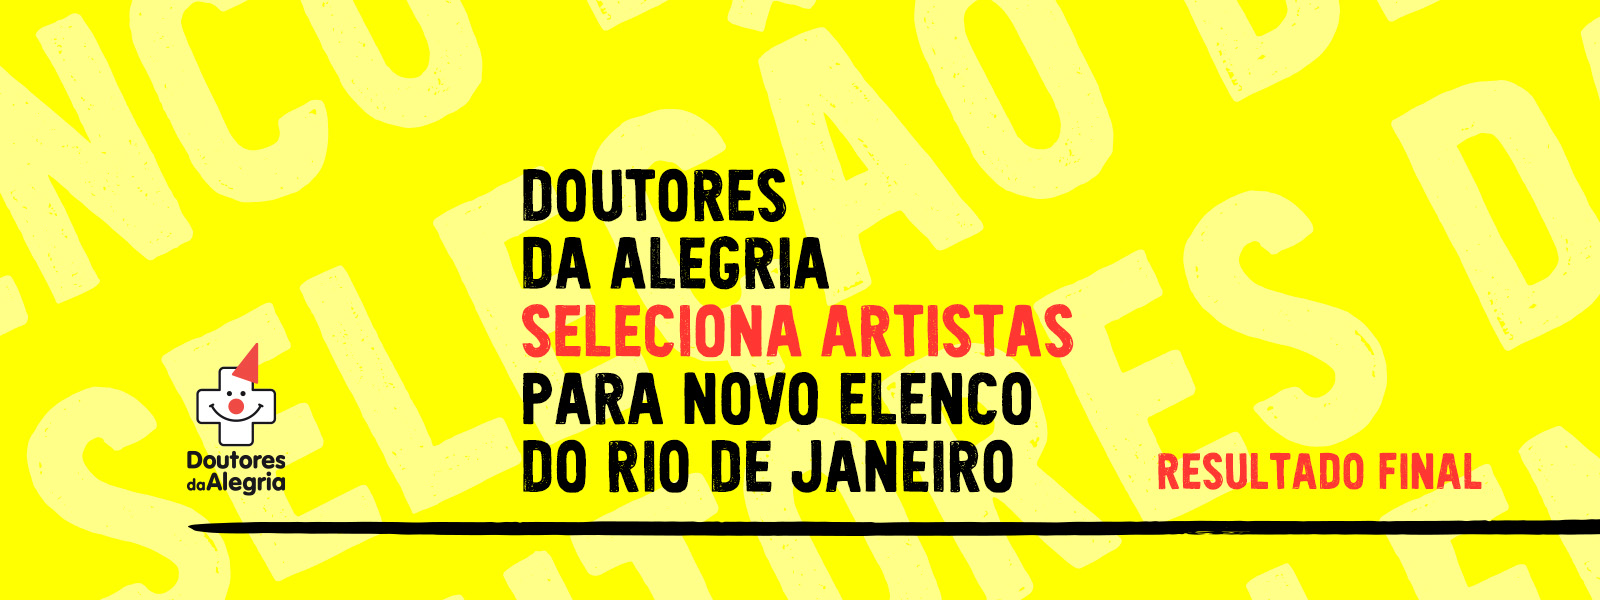 Doutores da Alegria encerra seleção com três artistas selecionados no Rio de Janeiro